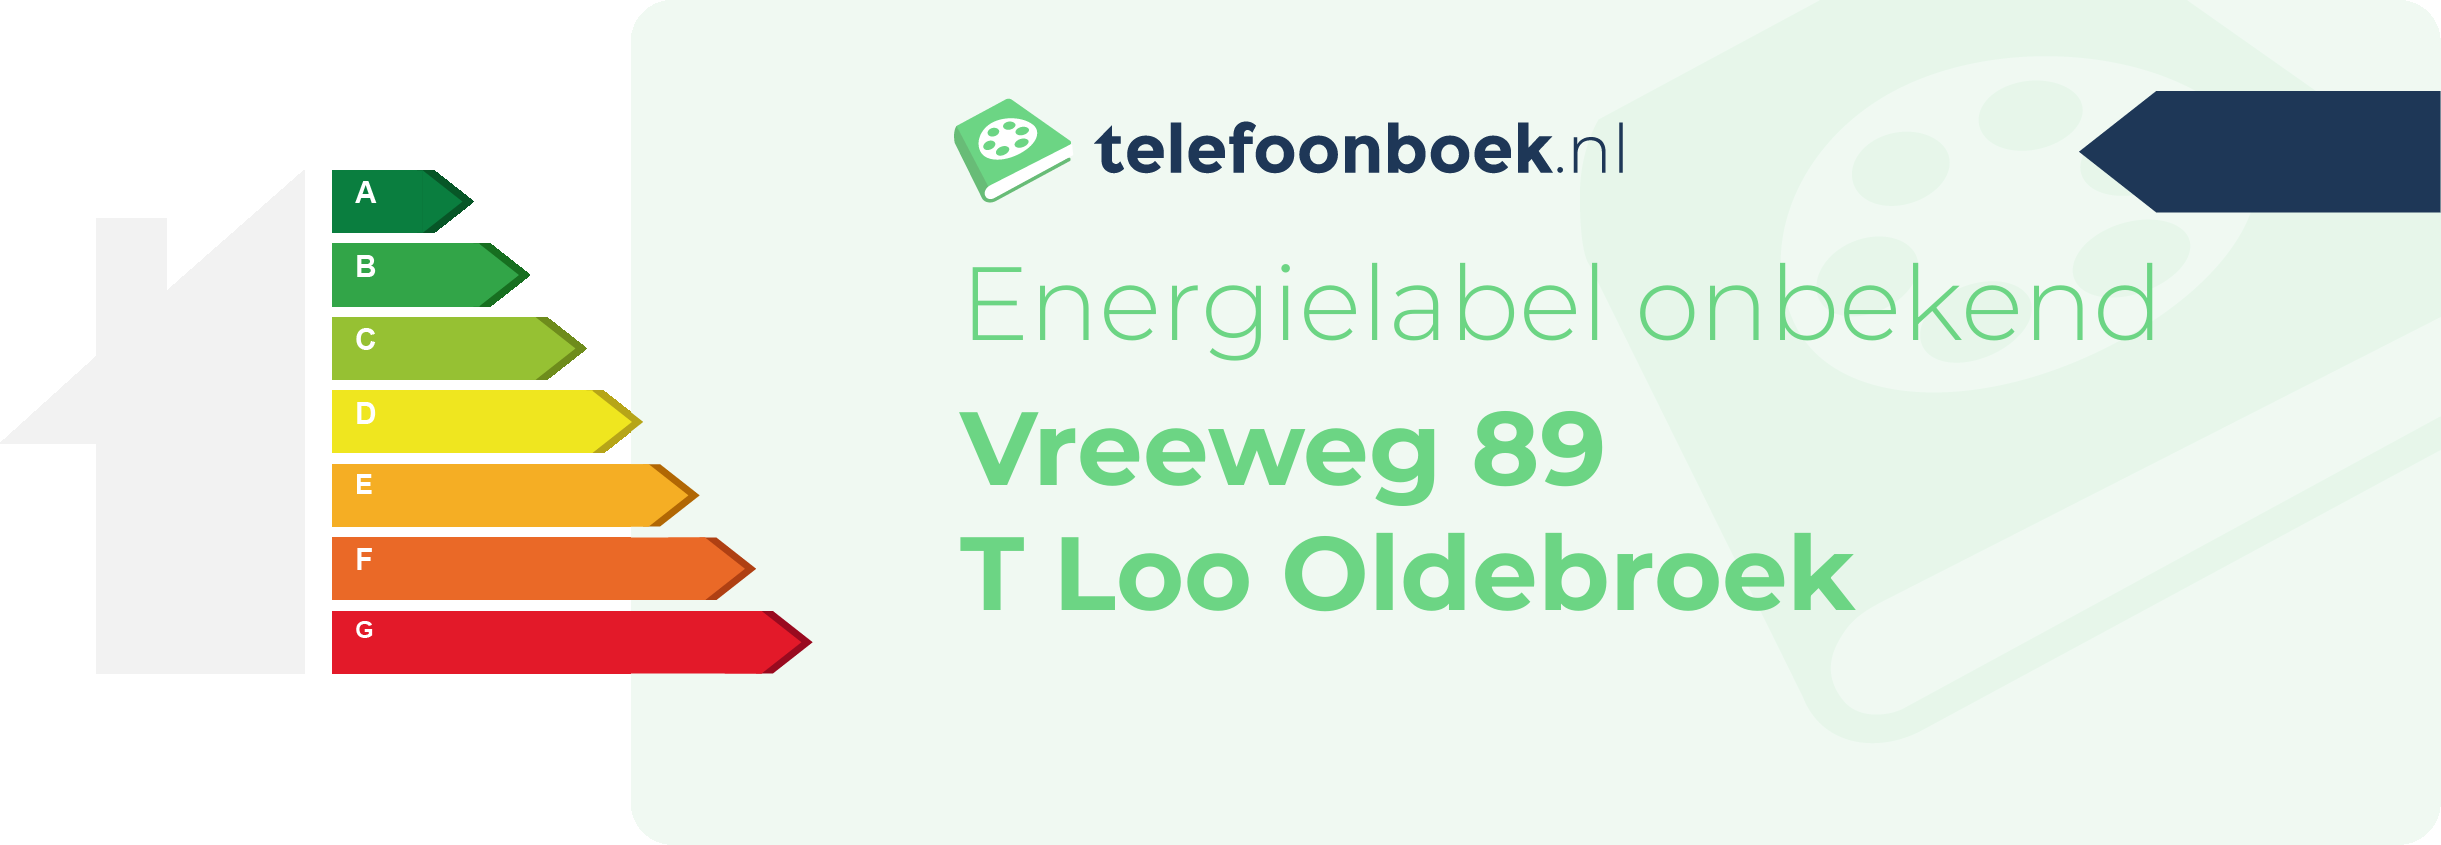 Energielabel Vreeweg 89 T Loo Oldebroek